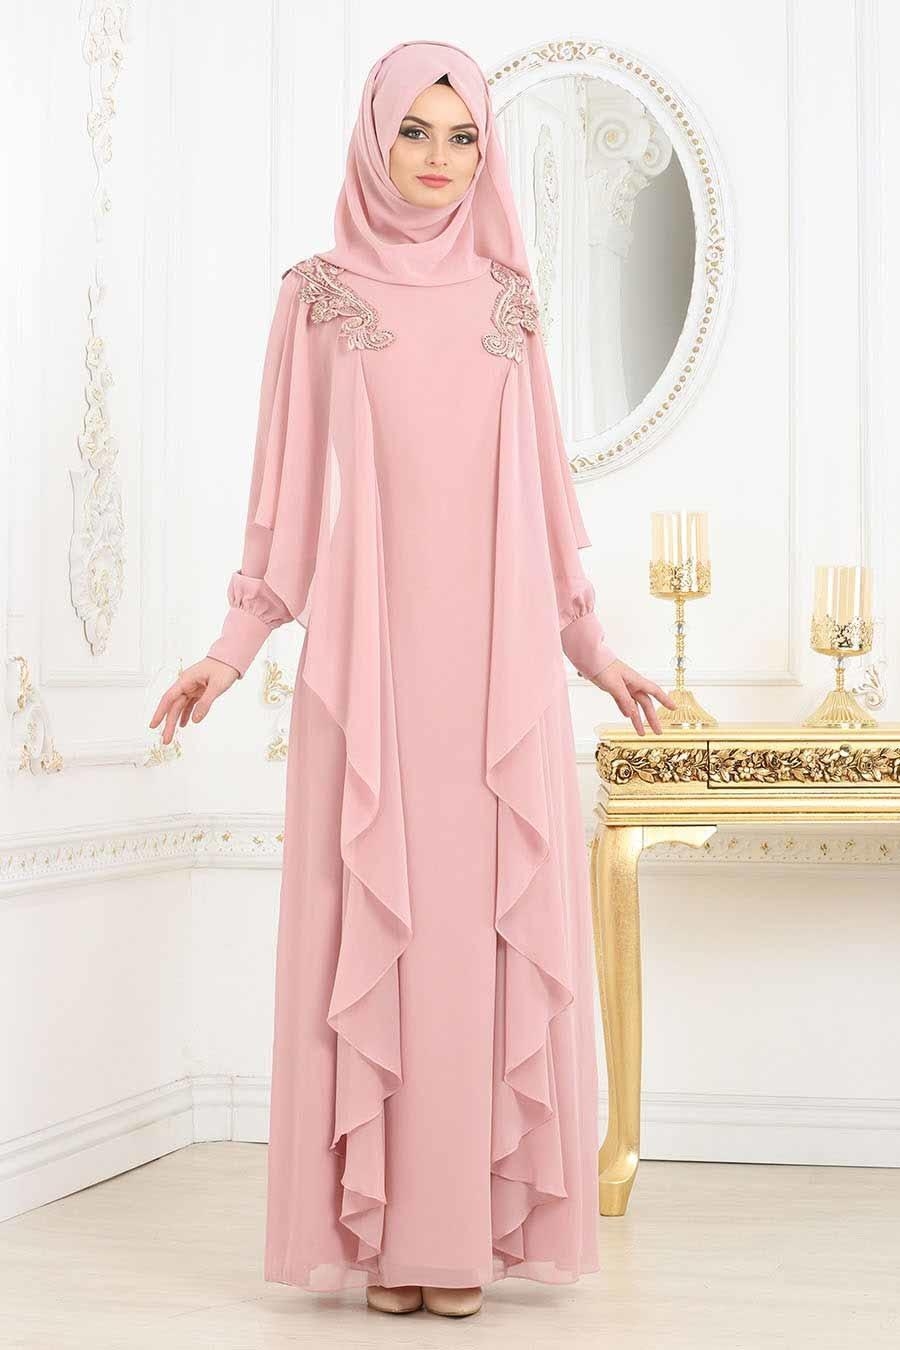 Сколько стоит мусульманский. Hijab Style 2020 вечерние платья. Хиджаб Абая 2021 мода. Вечерние платья 2022 Hijab. Musulmanka xidjab мода стиль Pink 2022.